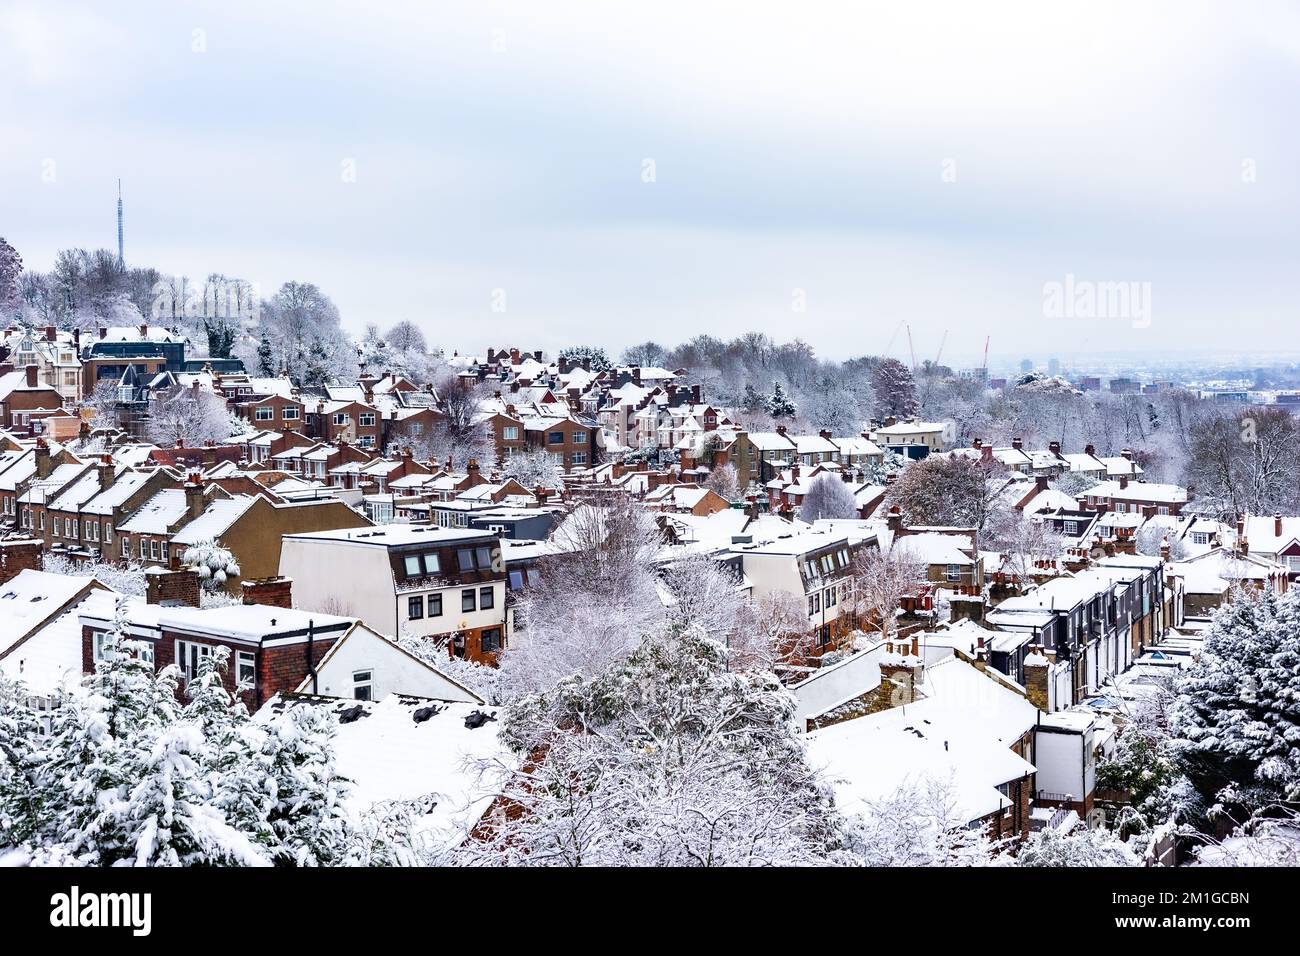 Un punto di vista alto nel nord di Londra è focalizzato su pesanti case coperte di neve e apartments.Rows di case terrazzate in tutte le directions.Cold come ghiaccio! Foto Stock